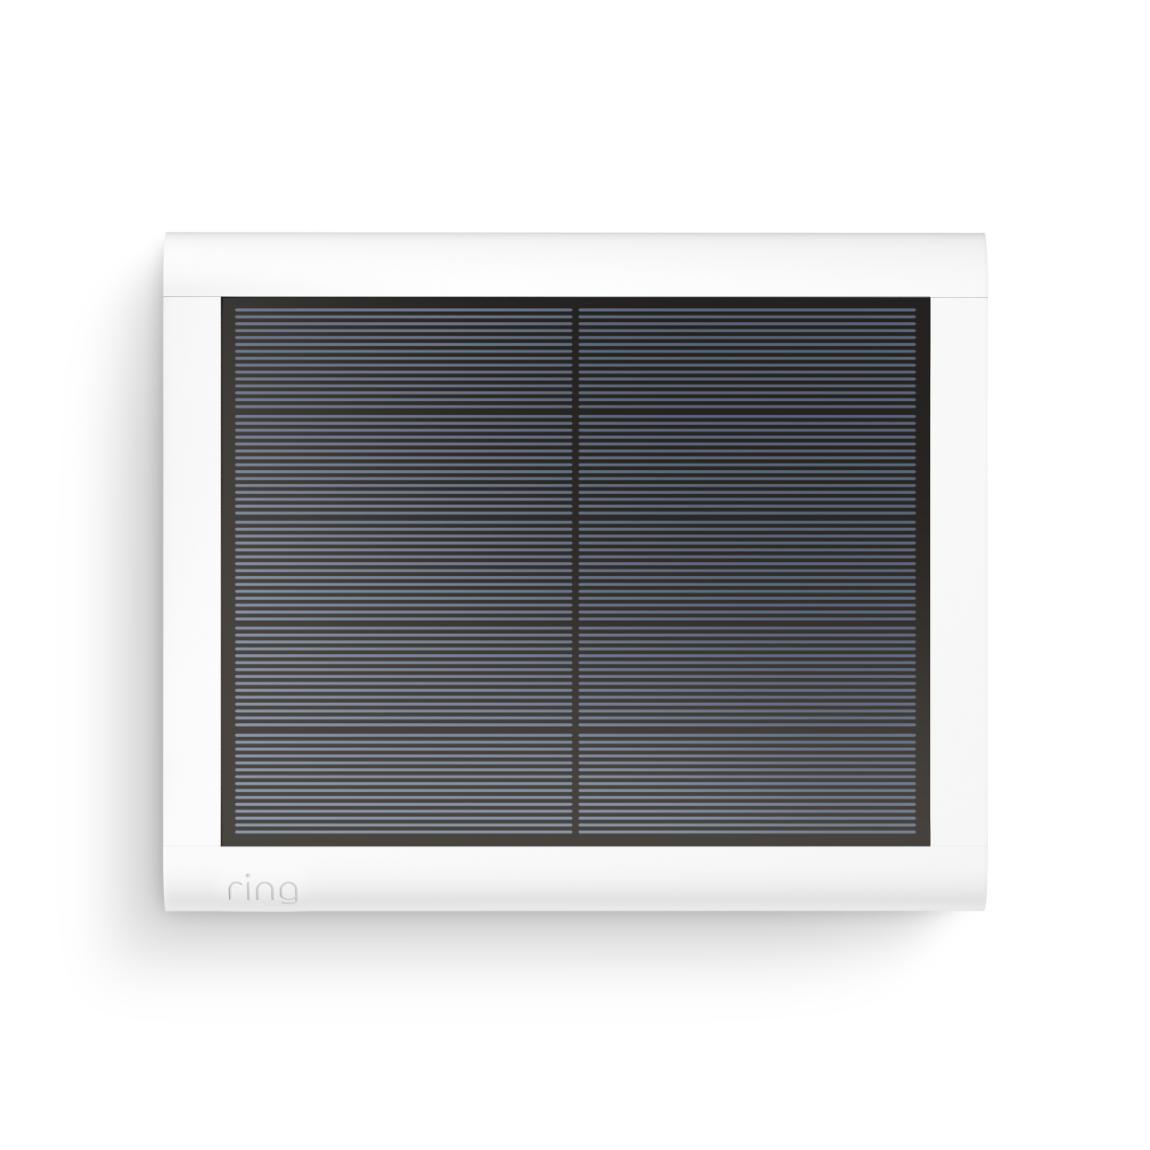 Ring Stick Up Cam Battery 2er-Set + Solar Panel (USB-C) 2er-Set